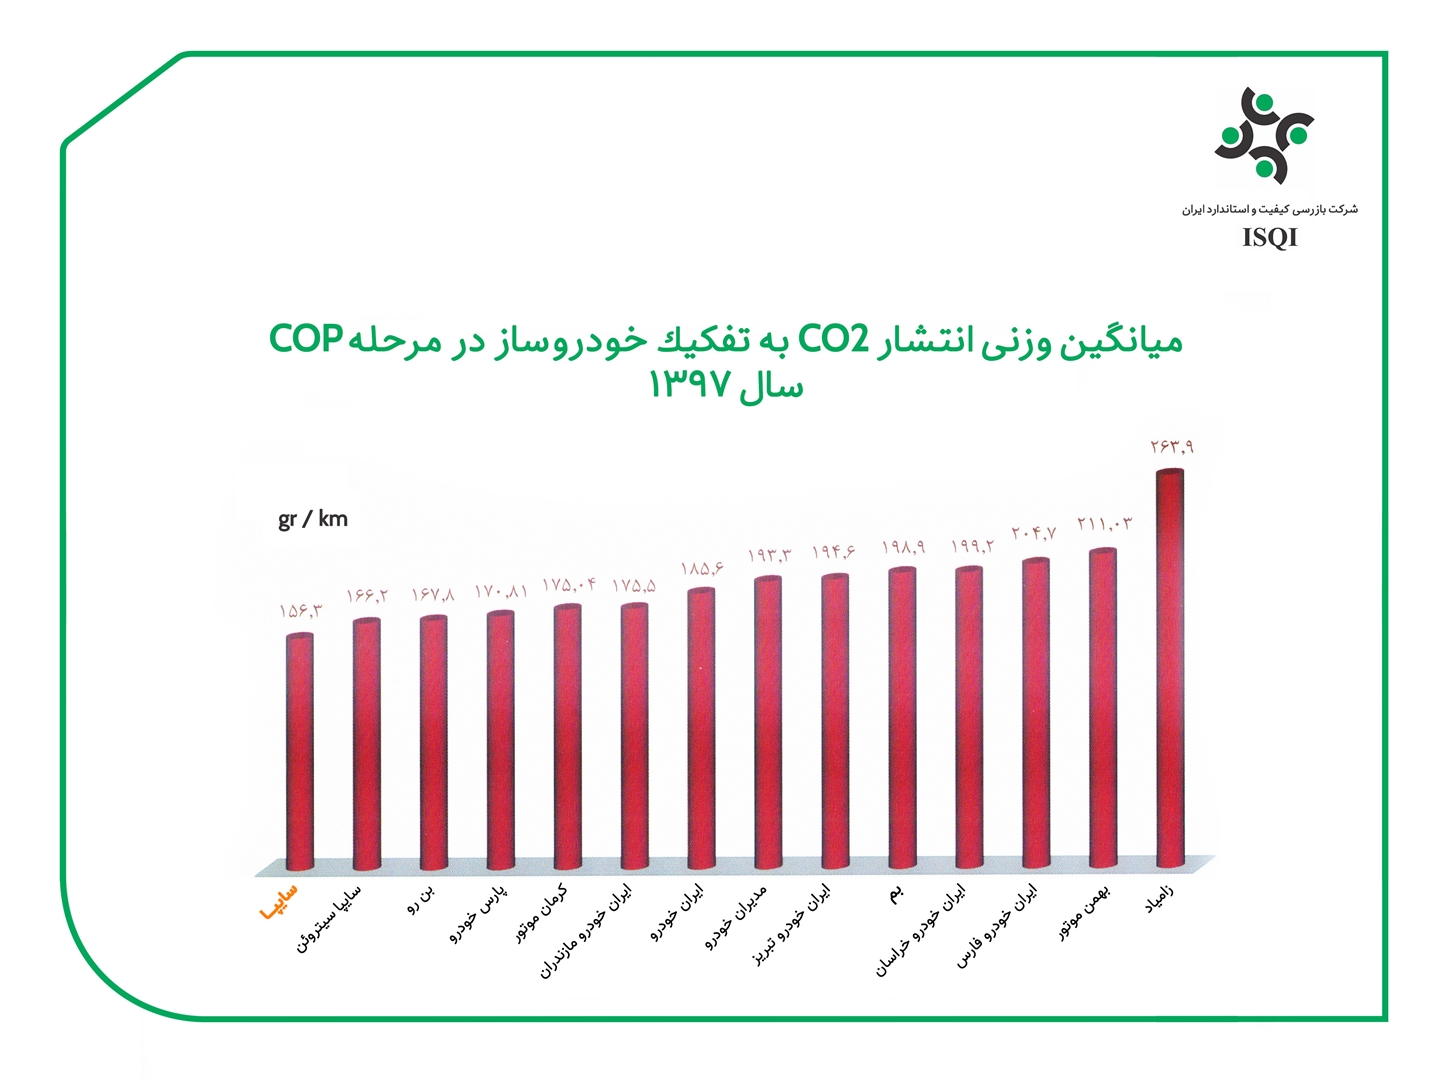 محصولات سایپا کمترین میزان ( CO2 ) را تولید می‌کنند / سایپا حائز رتبه اول پاک‌ترین خودروساز ایران در میزان آلایندگی هوا با گاز دی‌اکسیدکربن